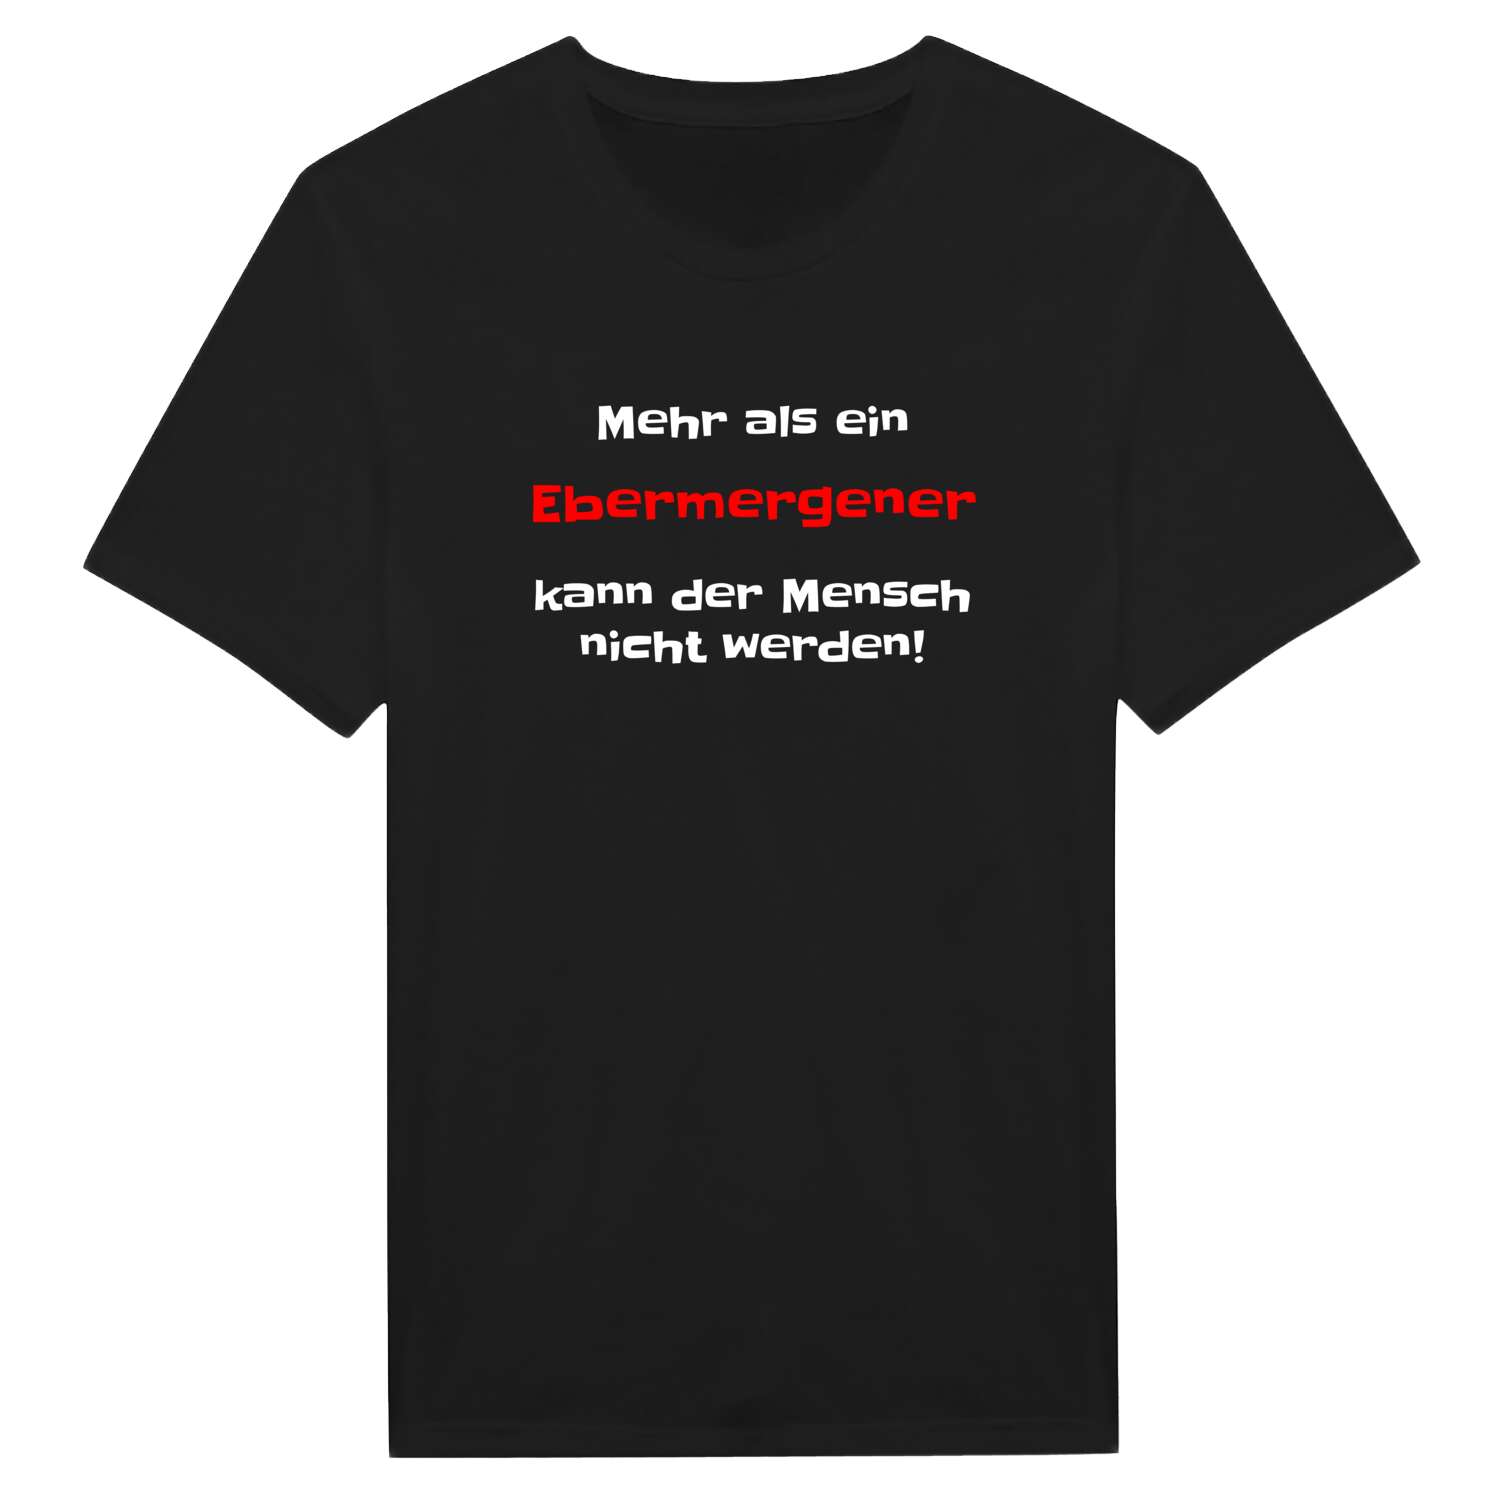 Ebermergen T-Shirt »Mehr als ein«